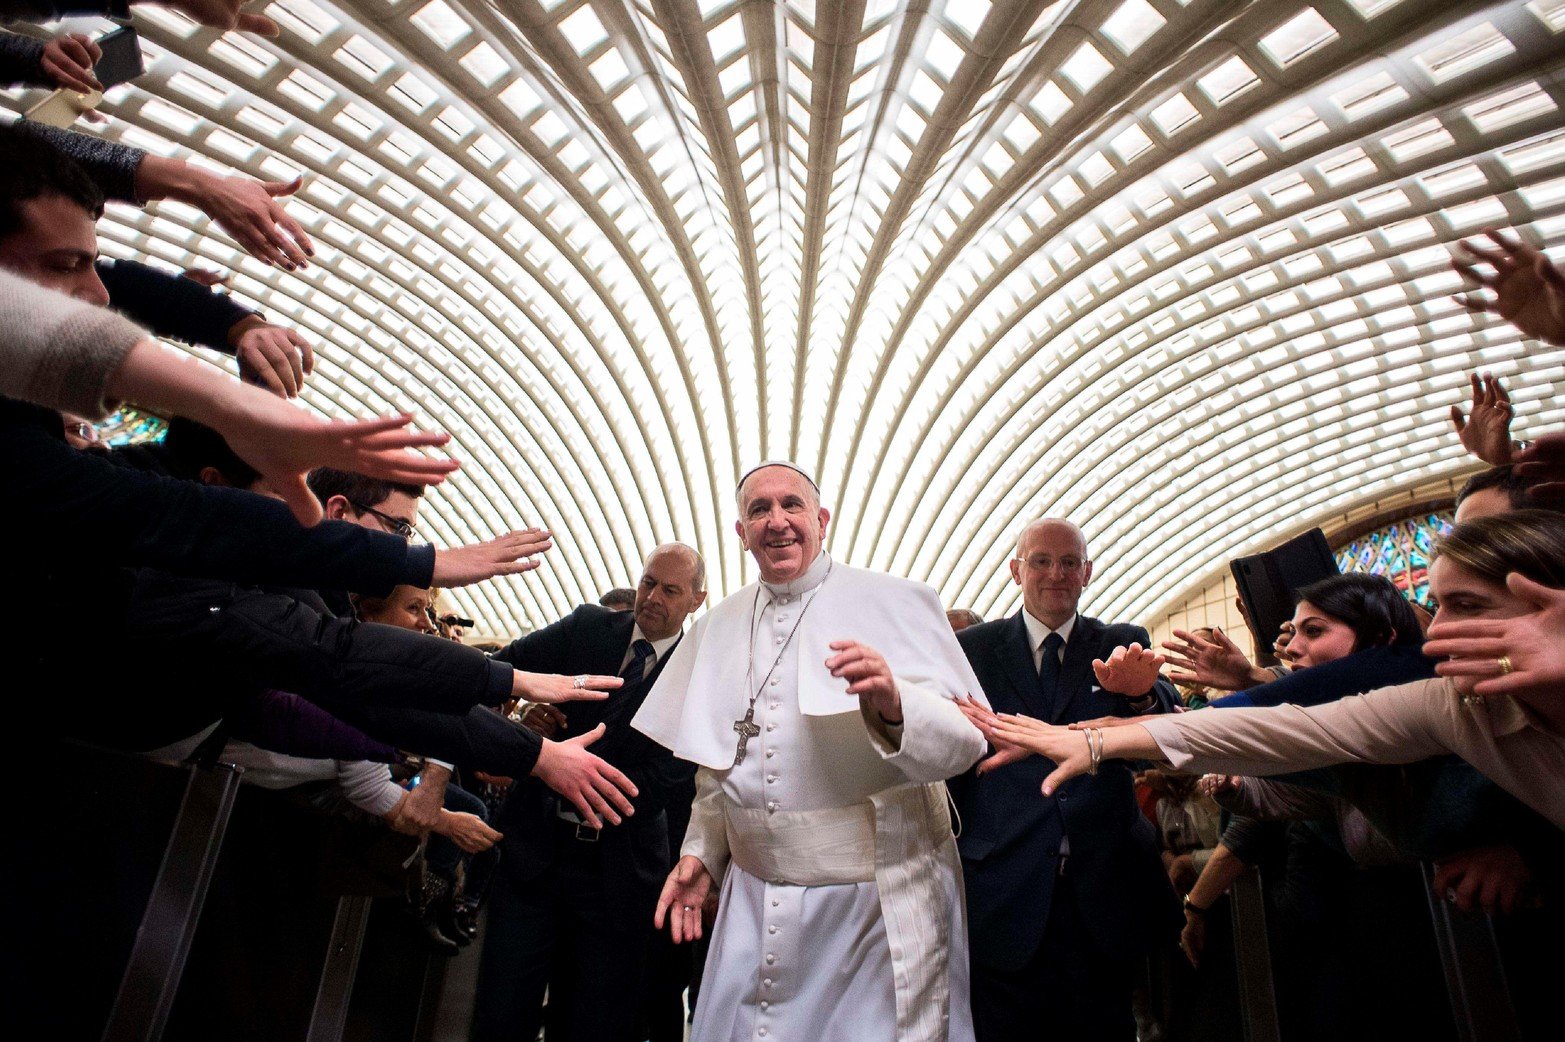 2015. El Papa Francisco asiste a una audiencia especial para la diócesis de Cassano allo Jonio en el Vaticano.